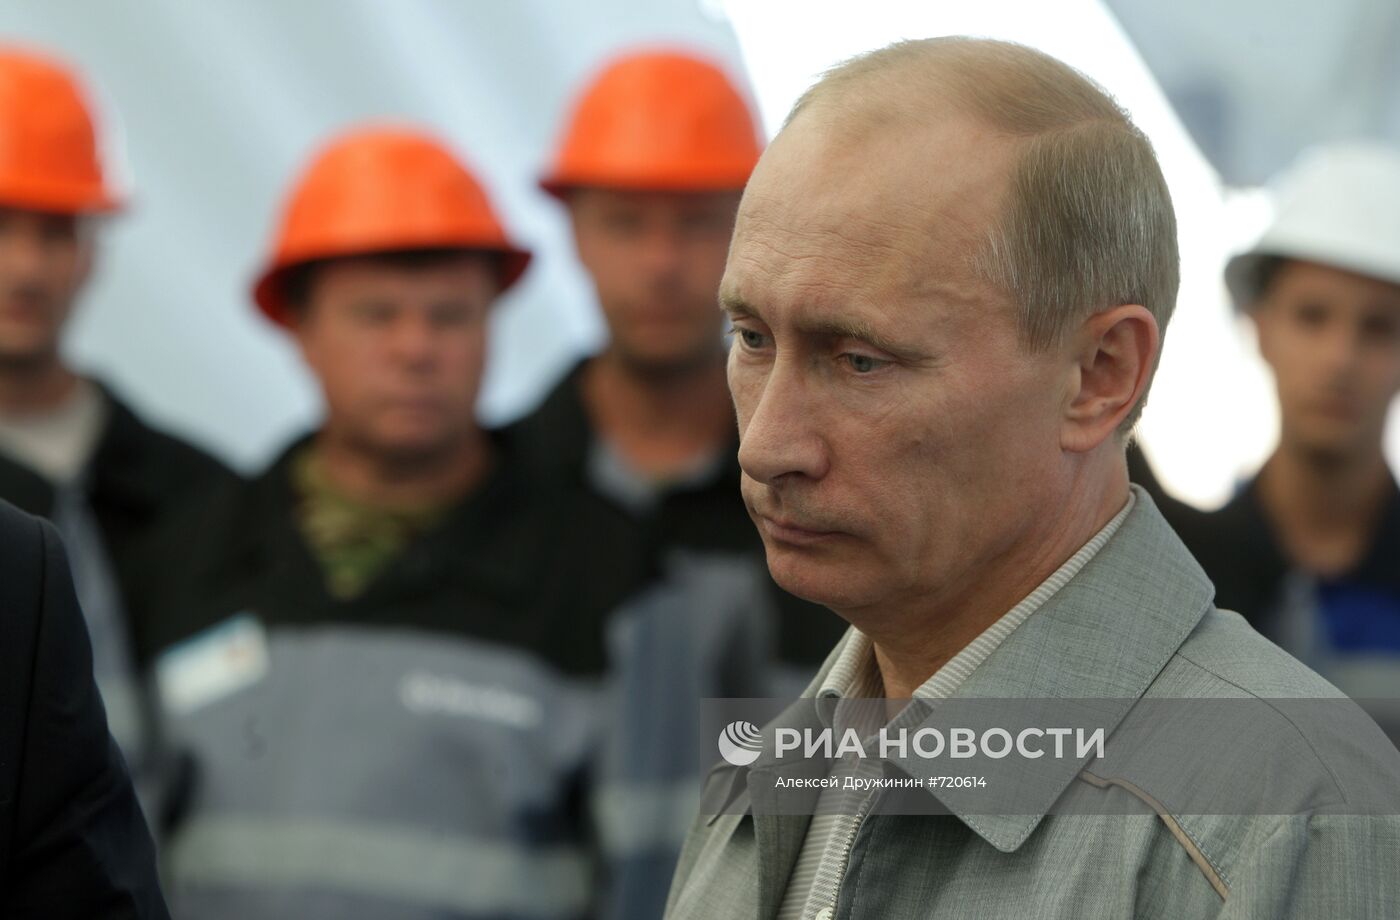 Владимир Путин посетил Гремячинское месторождение